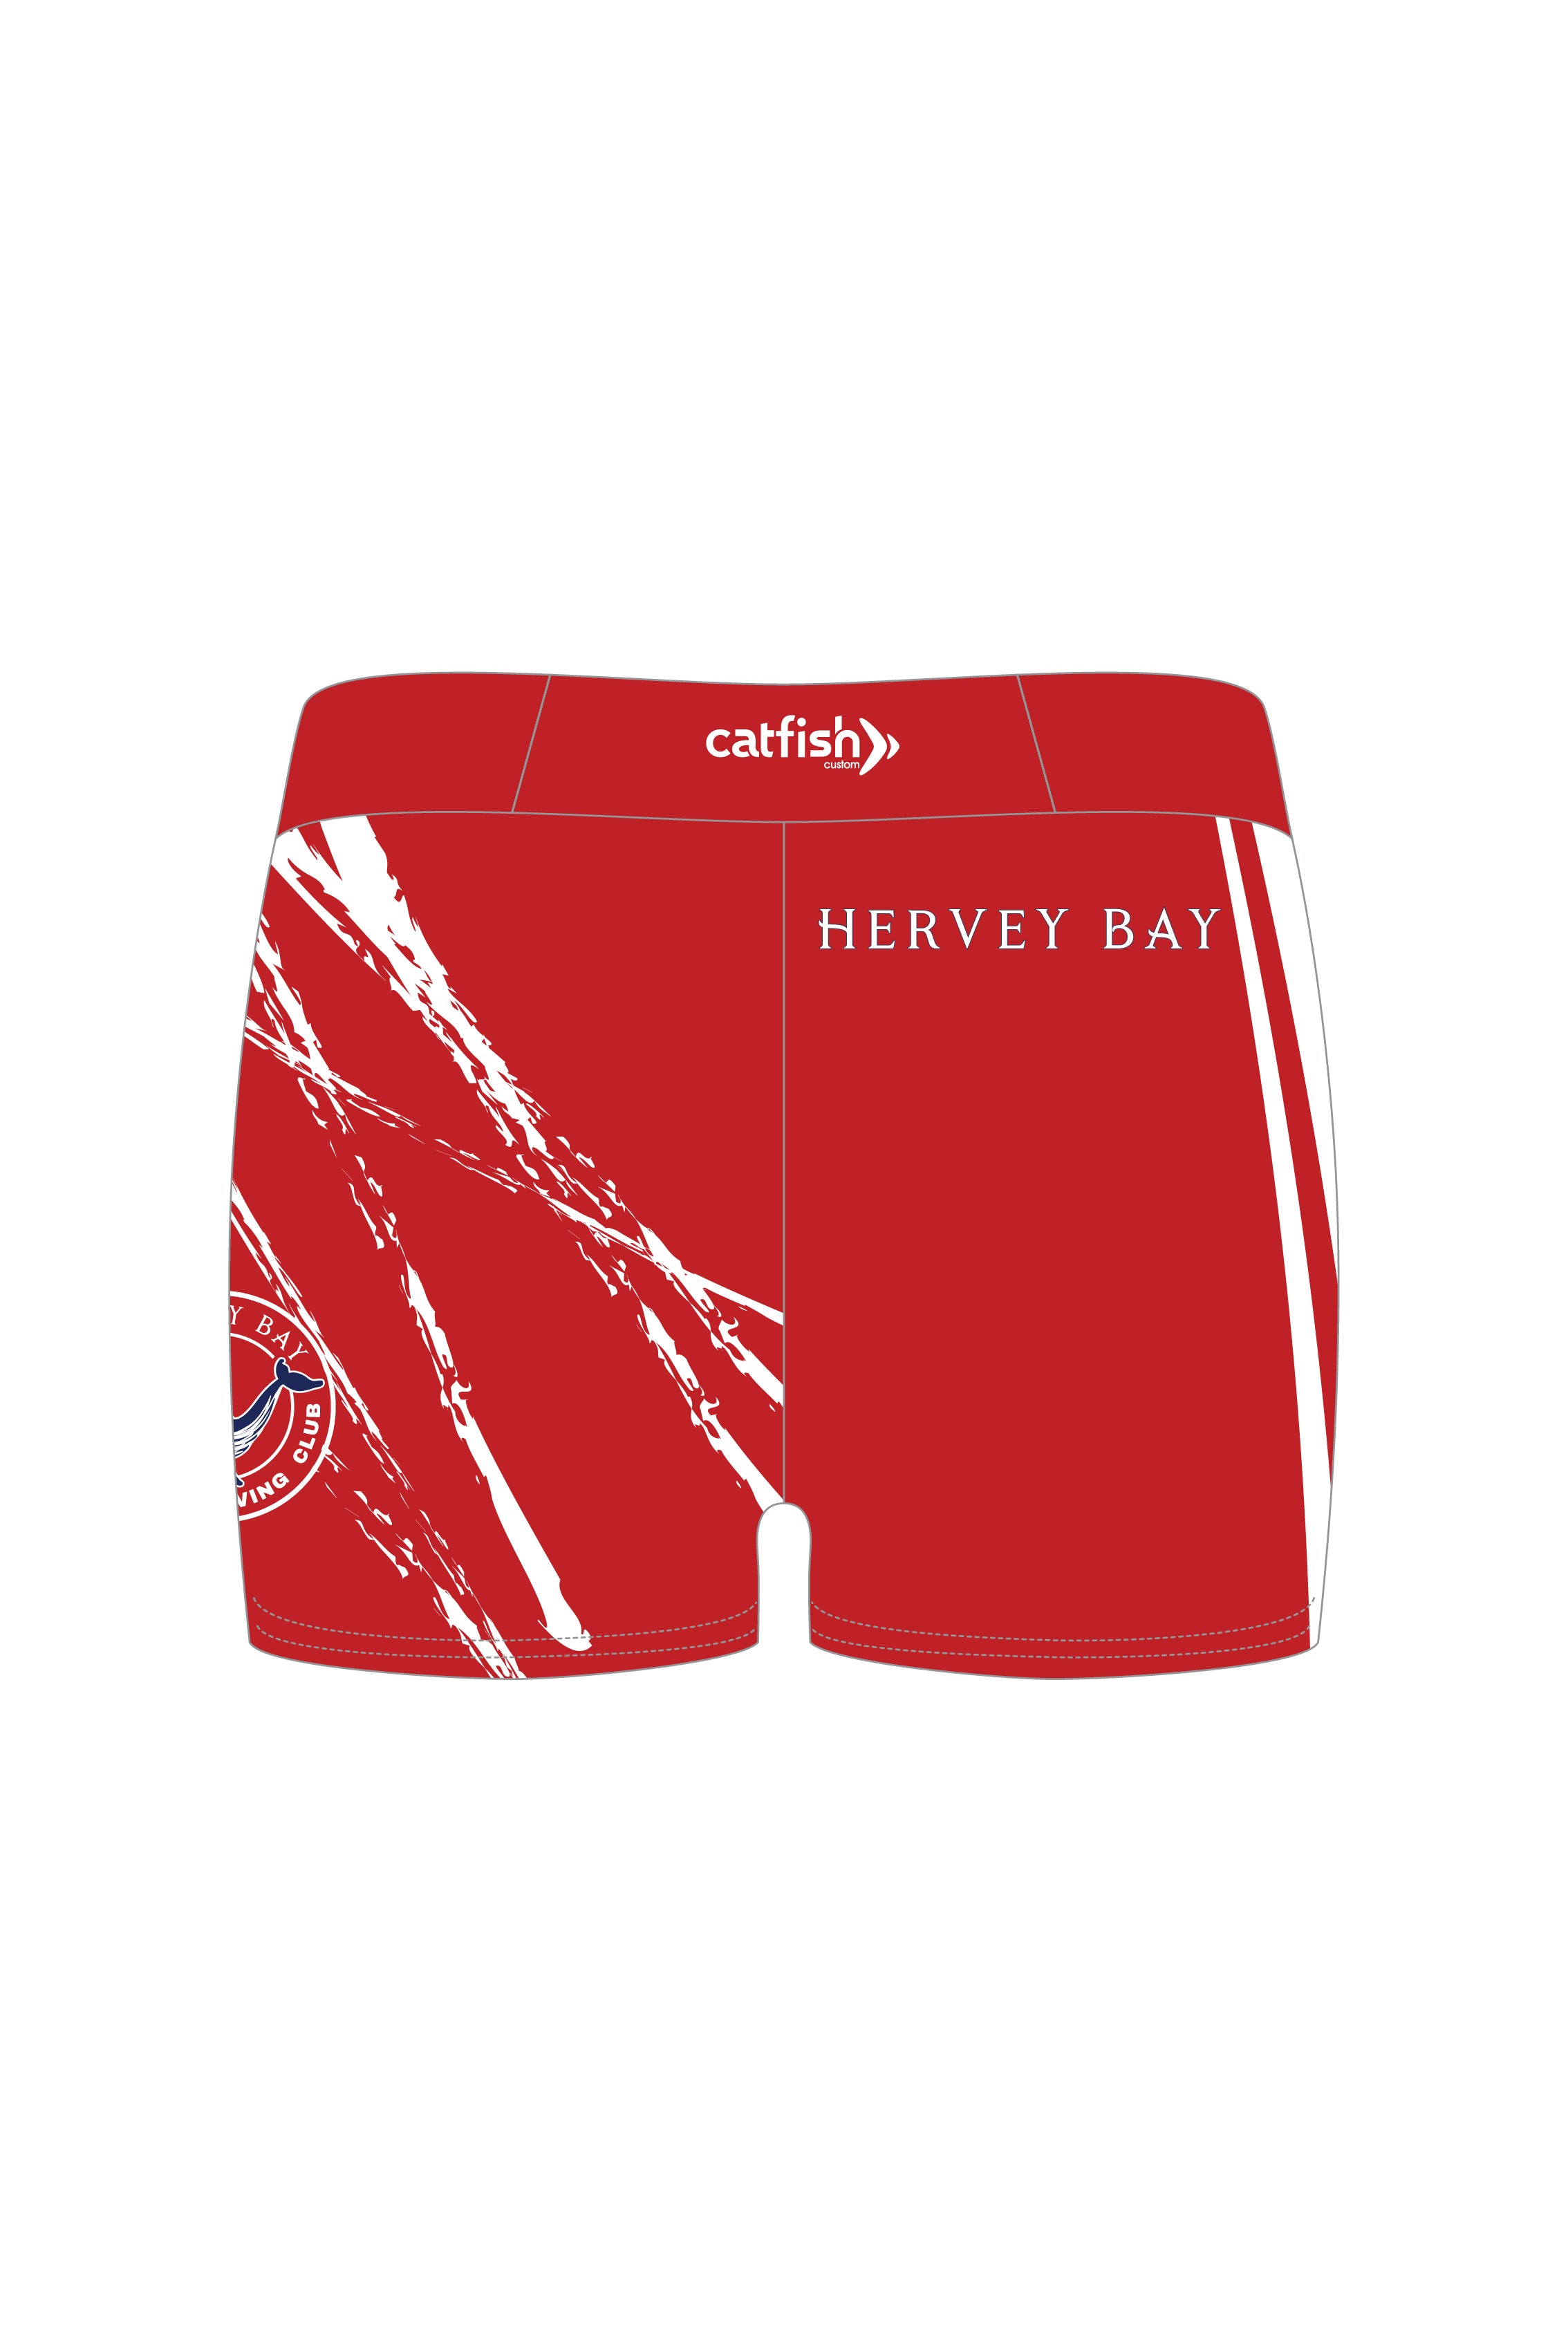 Hervey Bay Gym Shorts - Girl's